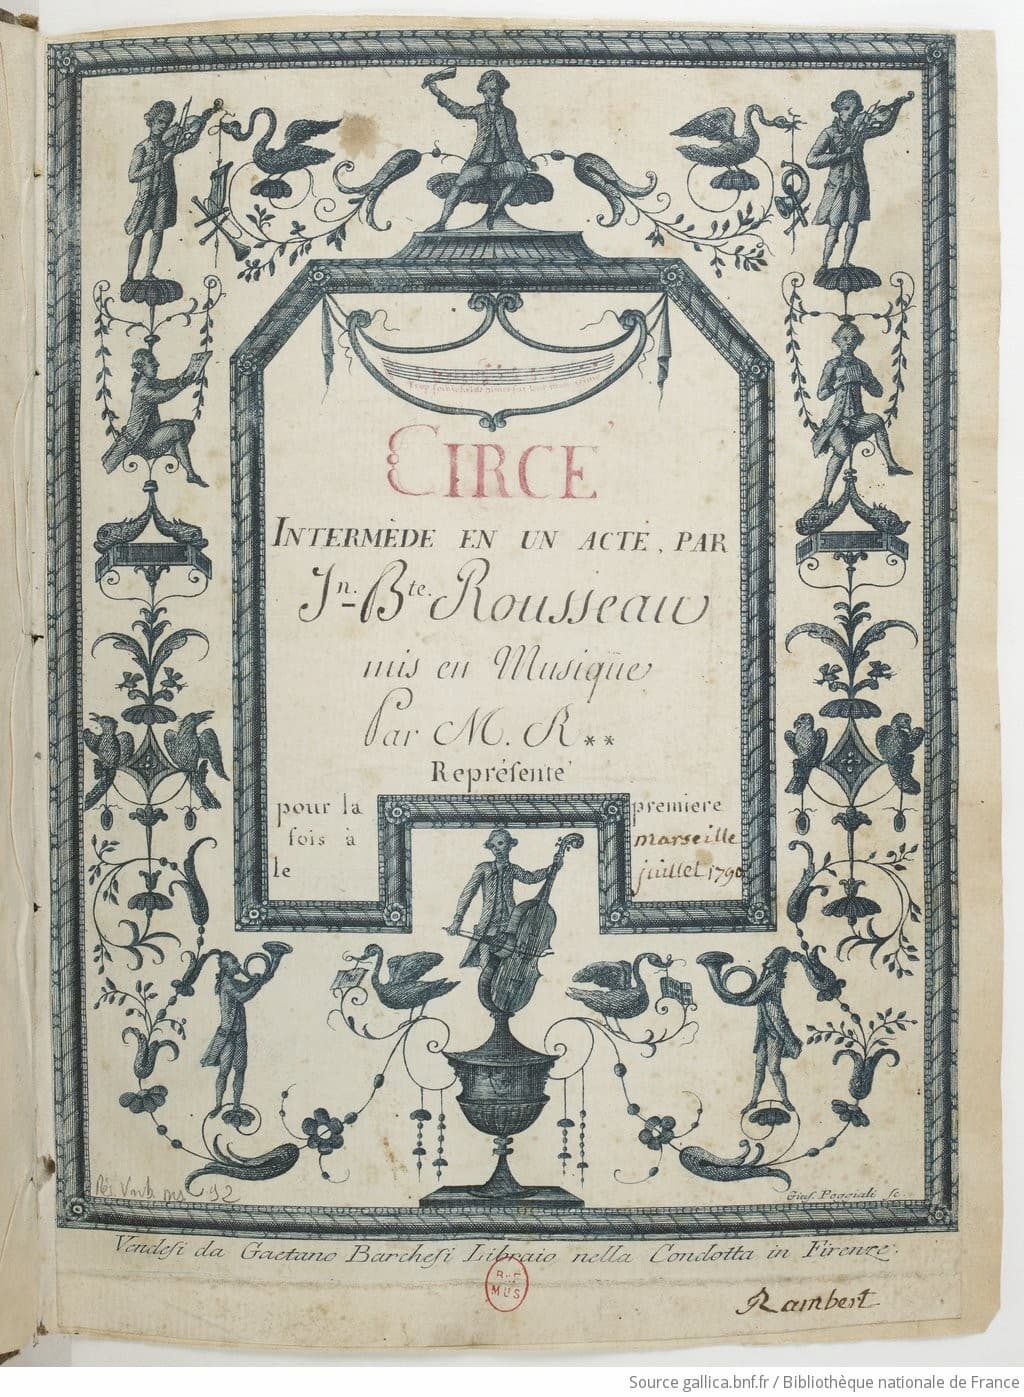 M. R**: Circé: Intermède en un acte, [1790] (Gallica, ark:/12148/cb166580736)